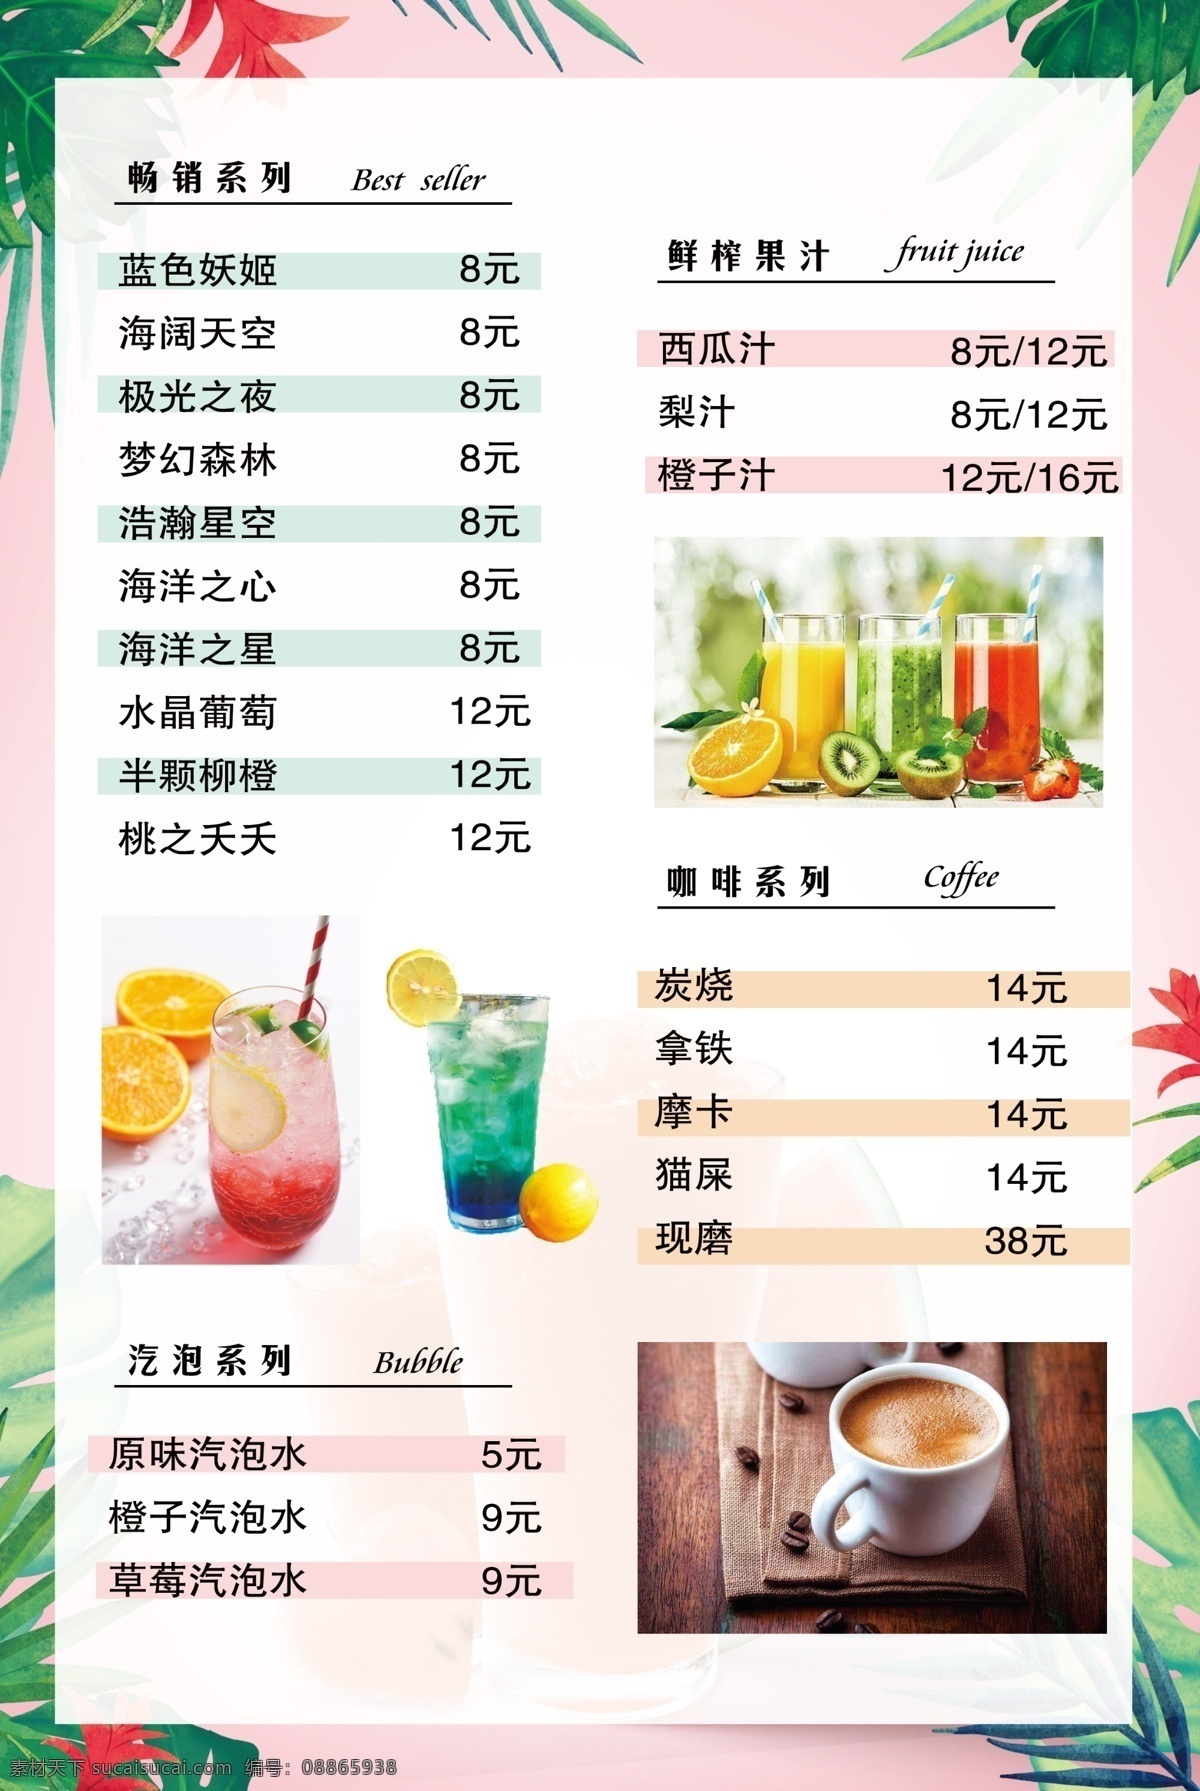 夏日饮品菜单 小清新 夏日 奶茶 饮品菜单 菜谱 柠檬奶茶 咖啡 菜单版式设计 文艺背景 宣传海报